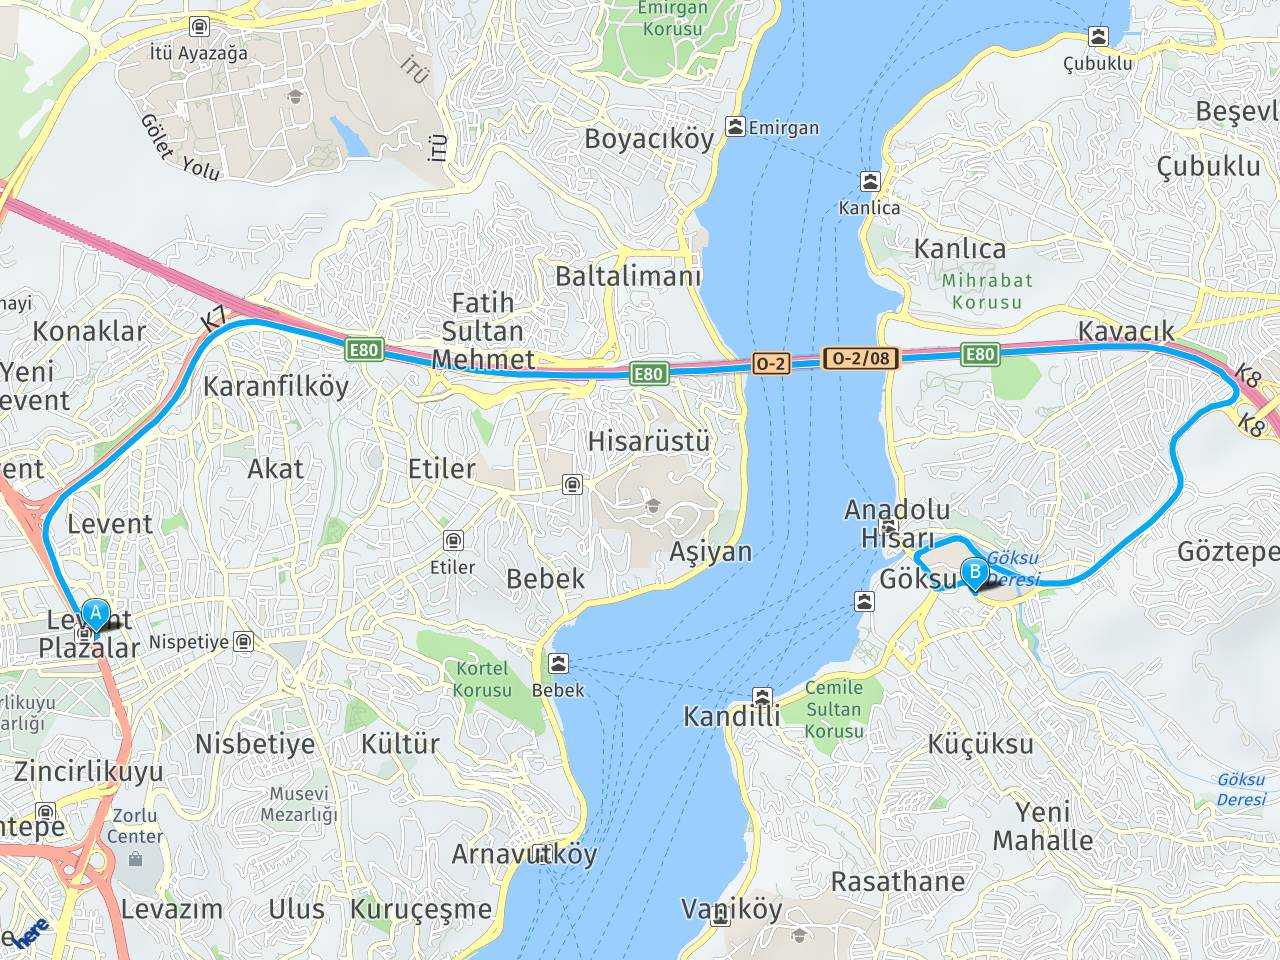 1 Levent İstanbul anadılu hisarı göksu caddesi beykoz haritası